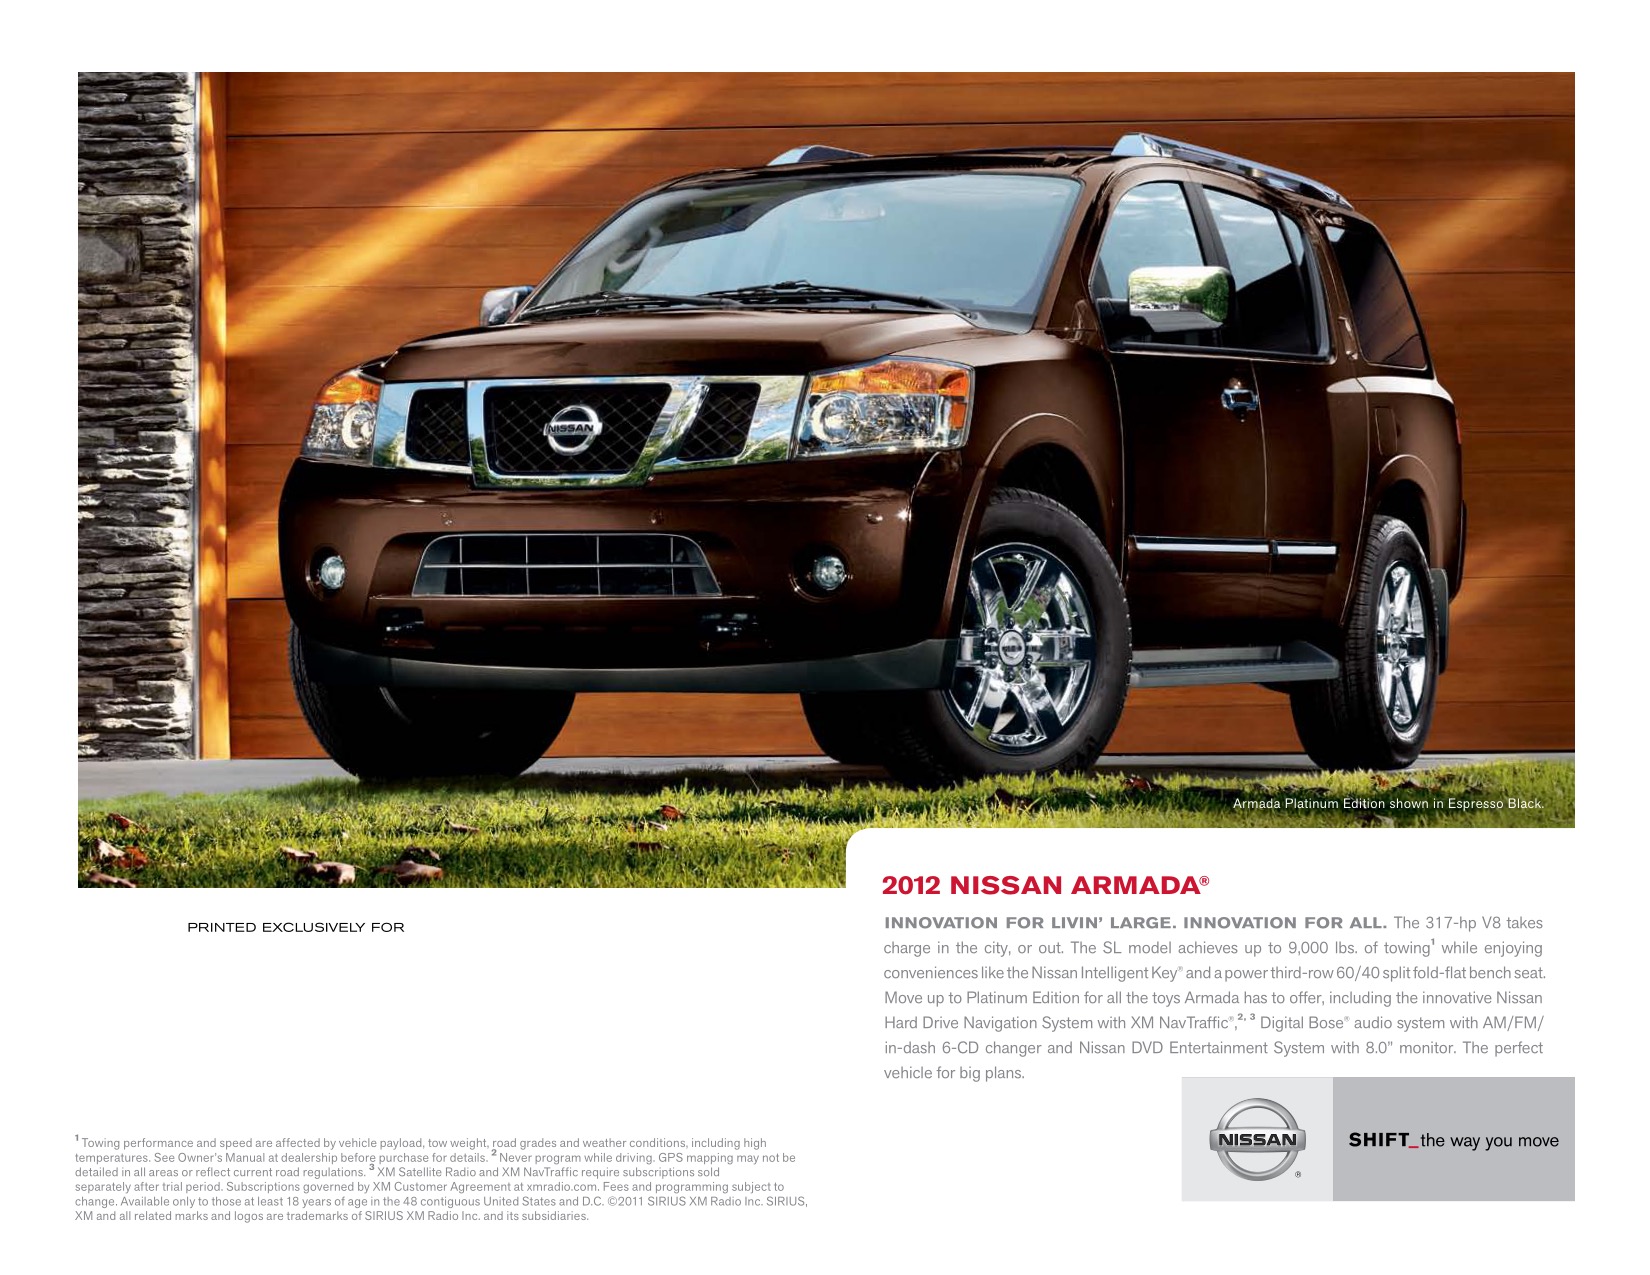 2012 Nissan Armada Brochure